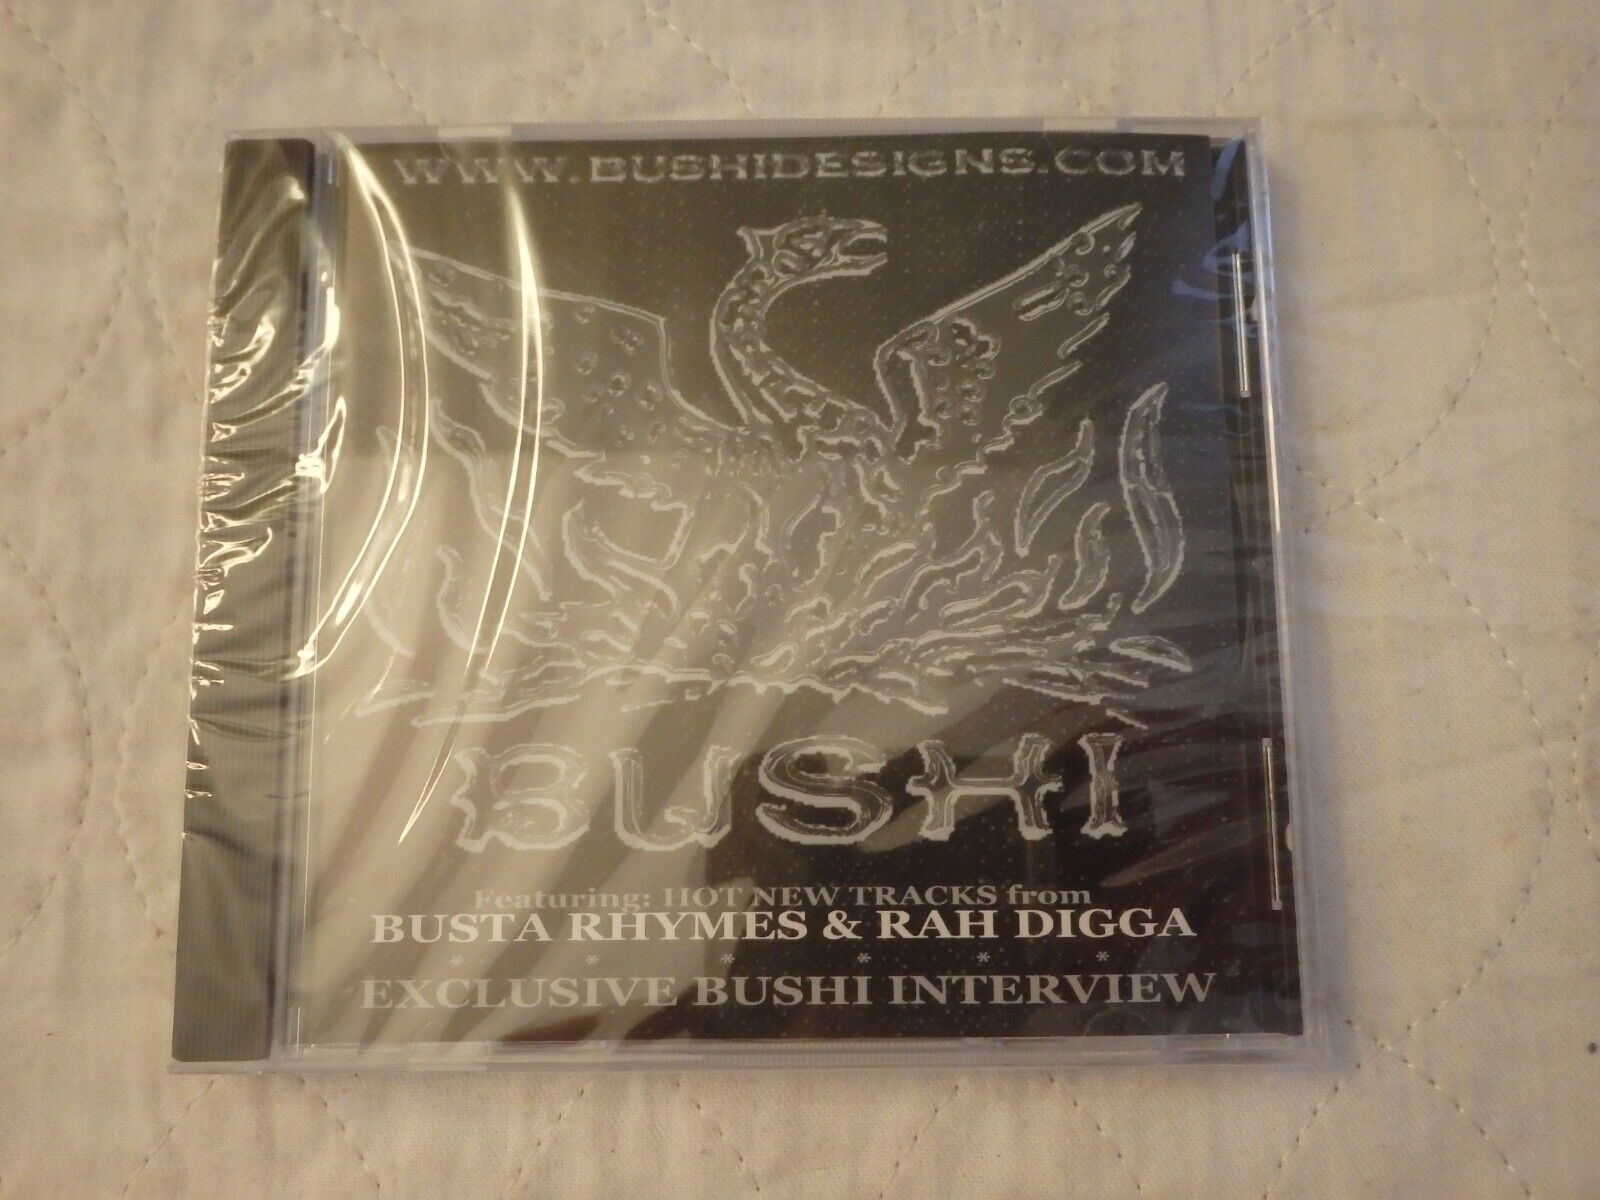 BUSHI HOT NEW TRACKS FROM BUSTA RHYMES & RAH DIGGA CD-EXCLUSIVE BUSHI INTERVIEW